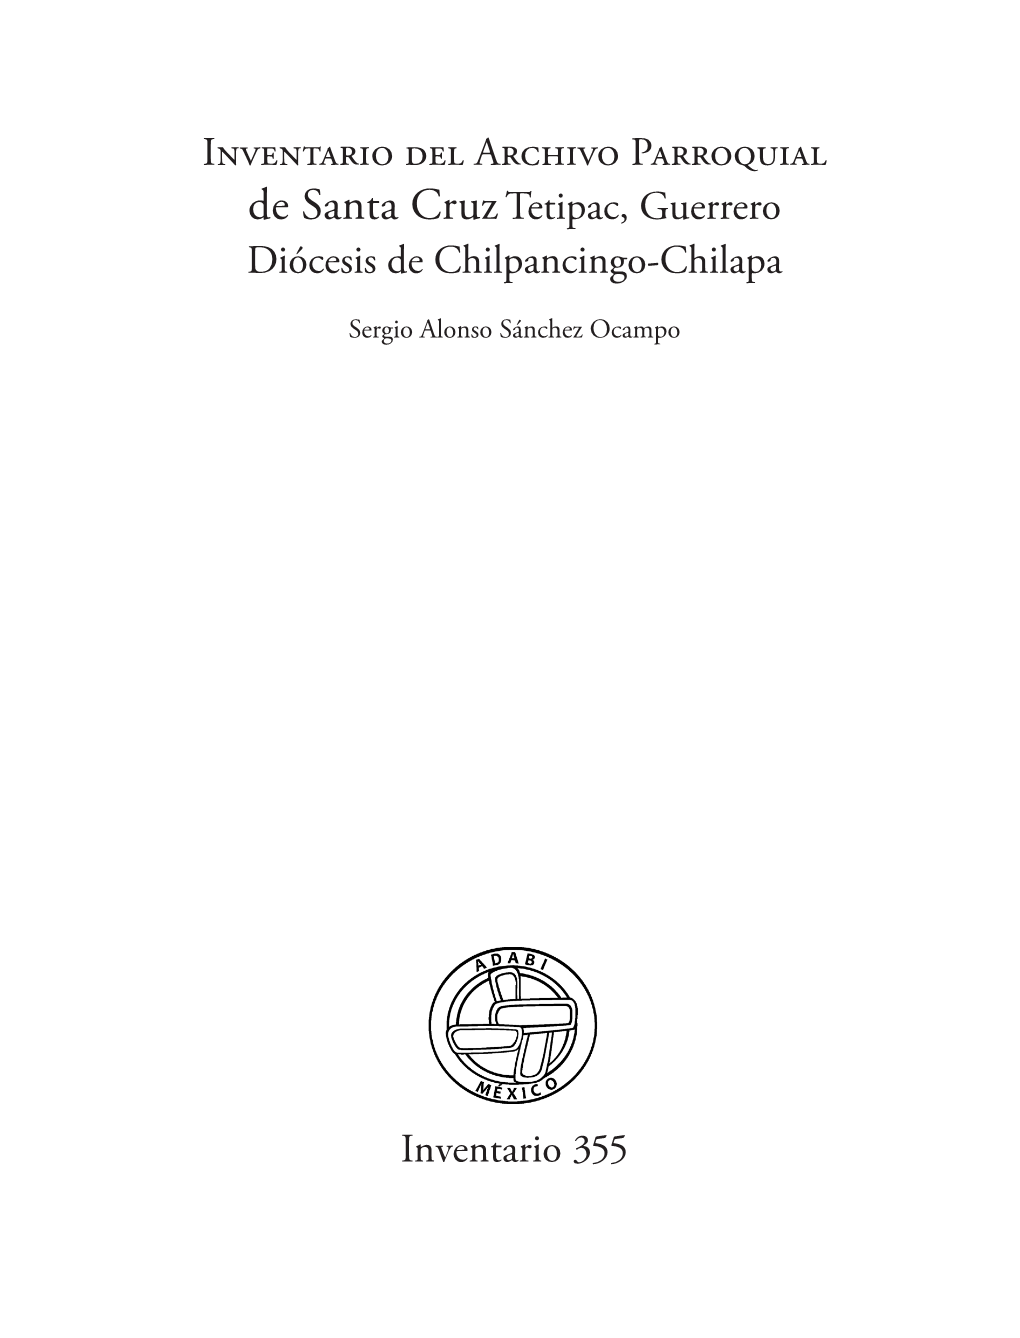 Inventario Del Archivo Parroquial De Santa Cruztetipac, Guerrero Diócesis De Chilpancingo-Chilapa Inventario